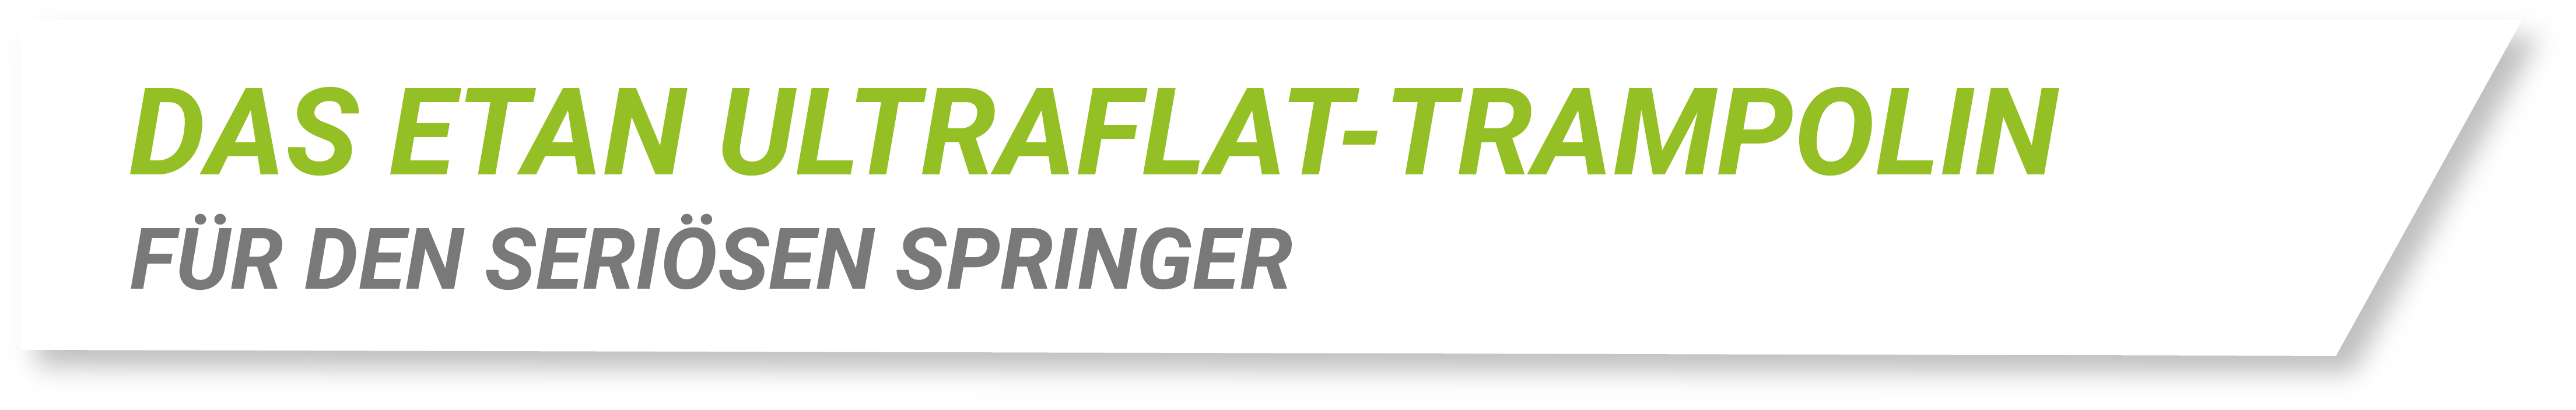 Etan UltraFlat-Trampolin: für den seriösen springer